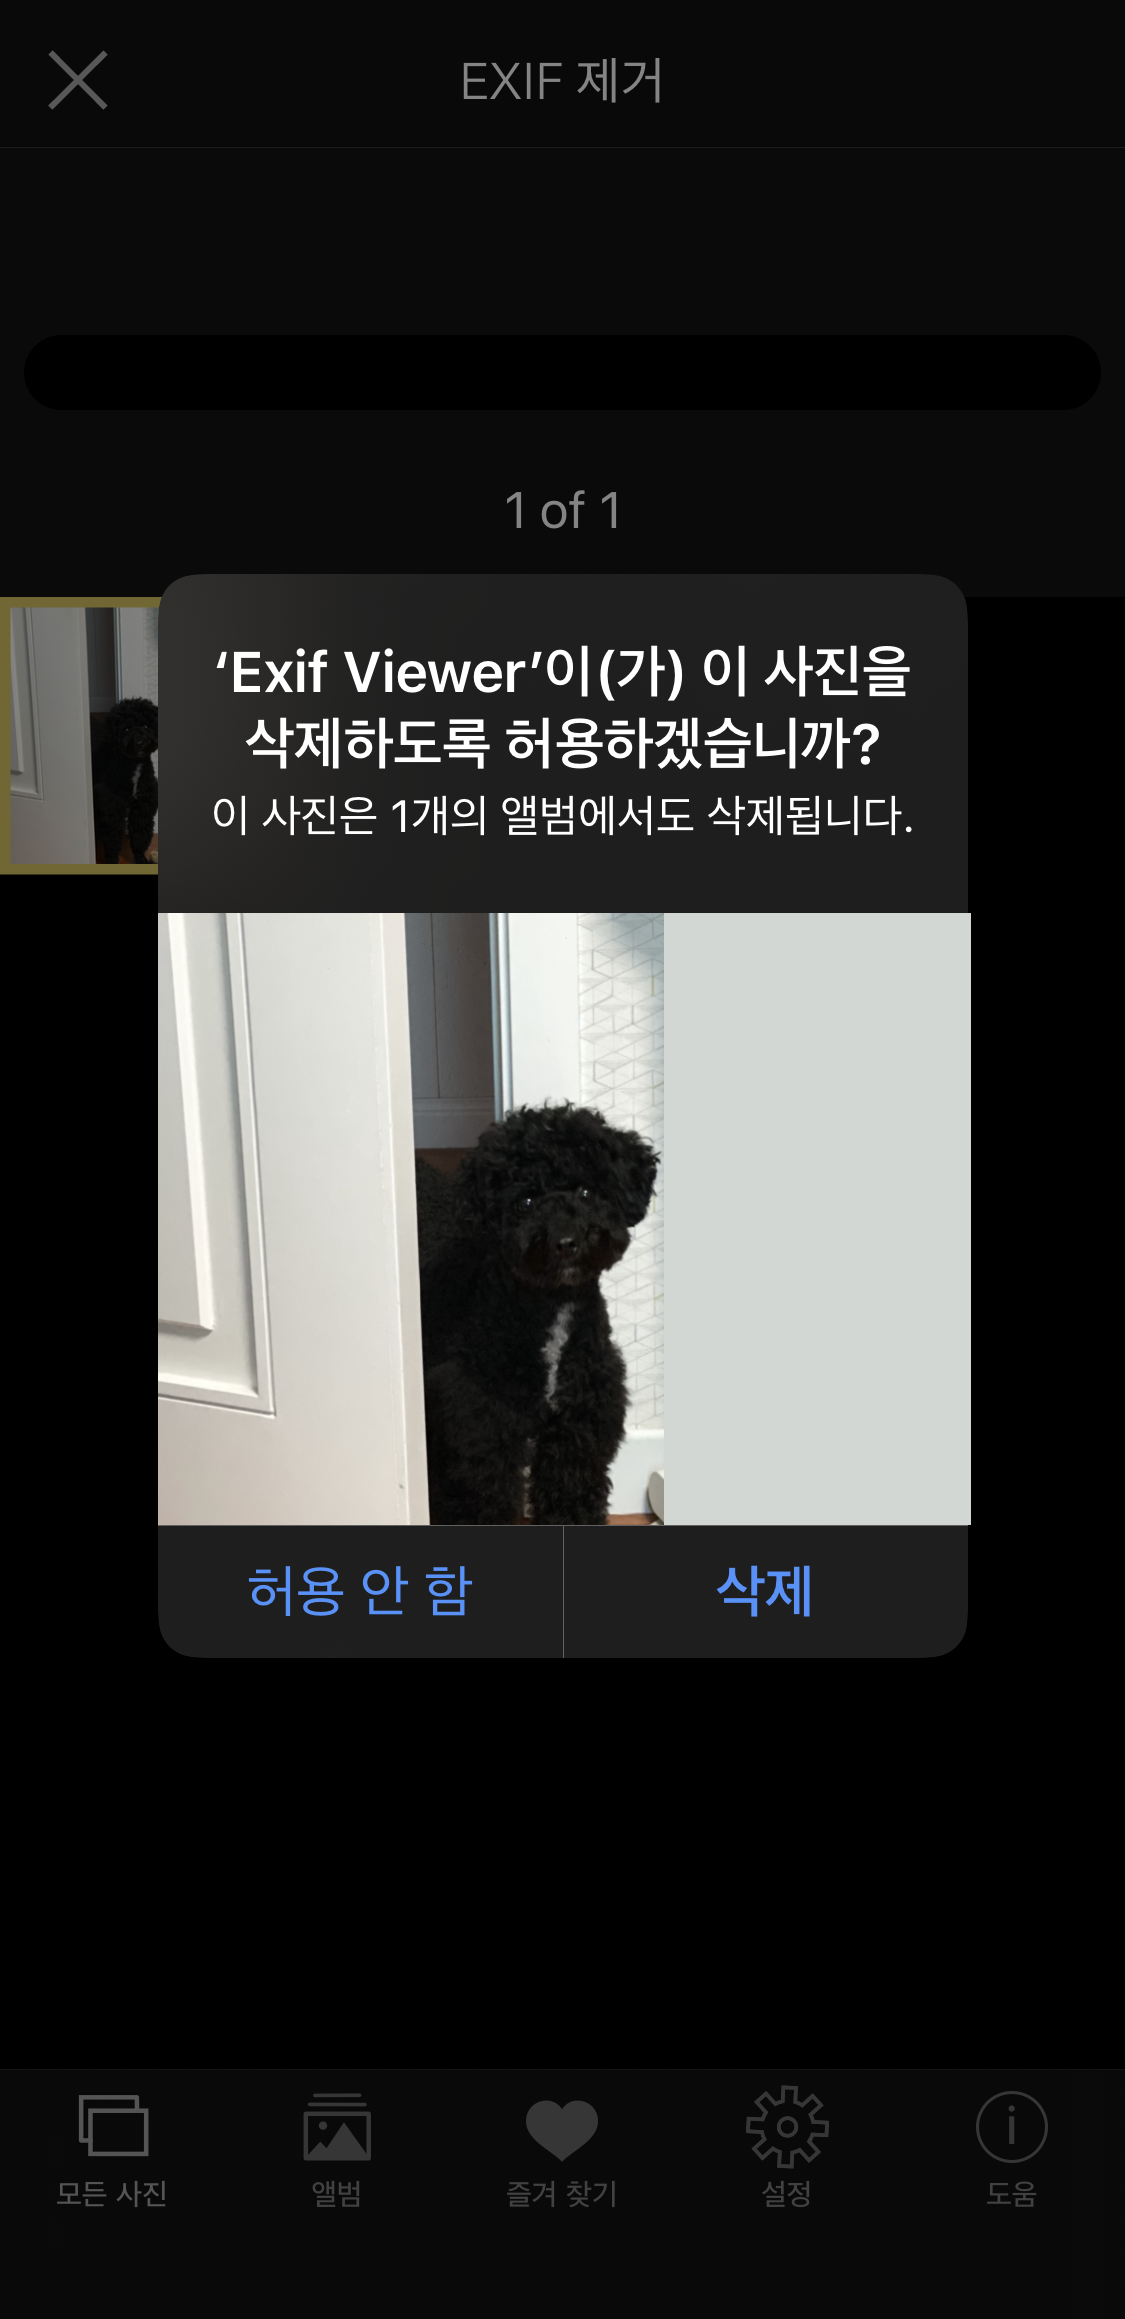 EXIF viewer - 사진 정보 제거하기